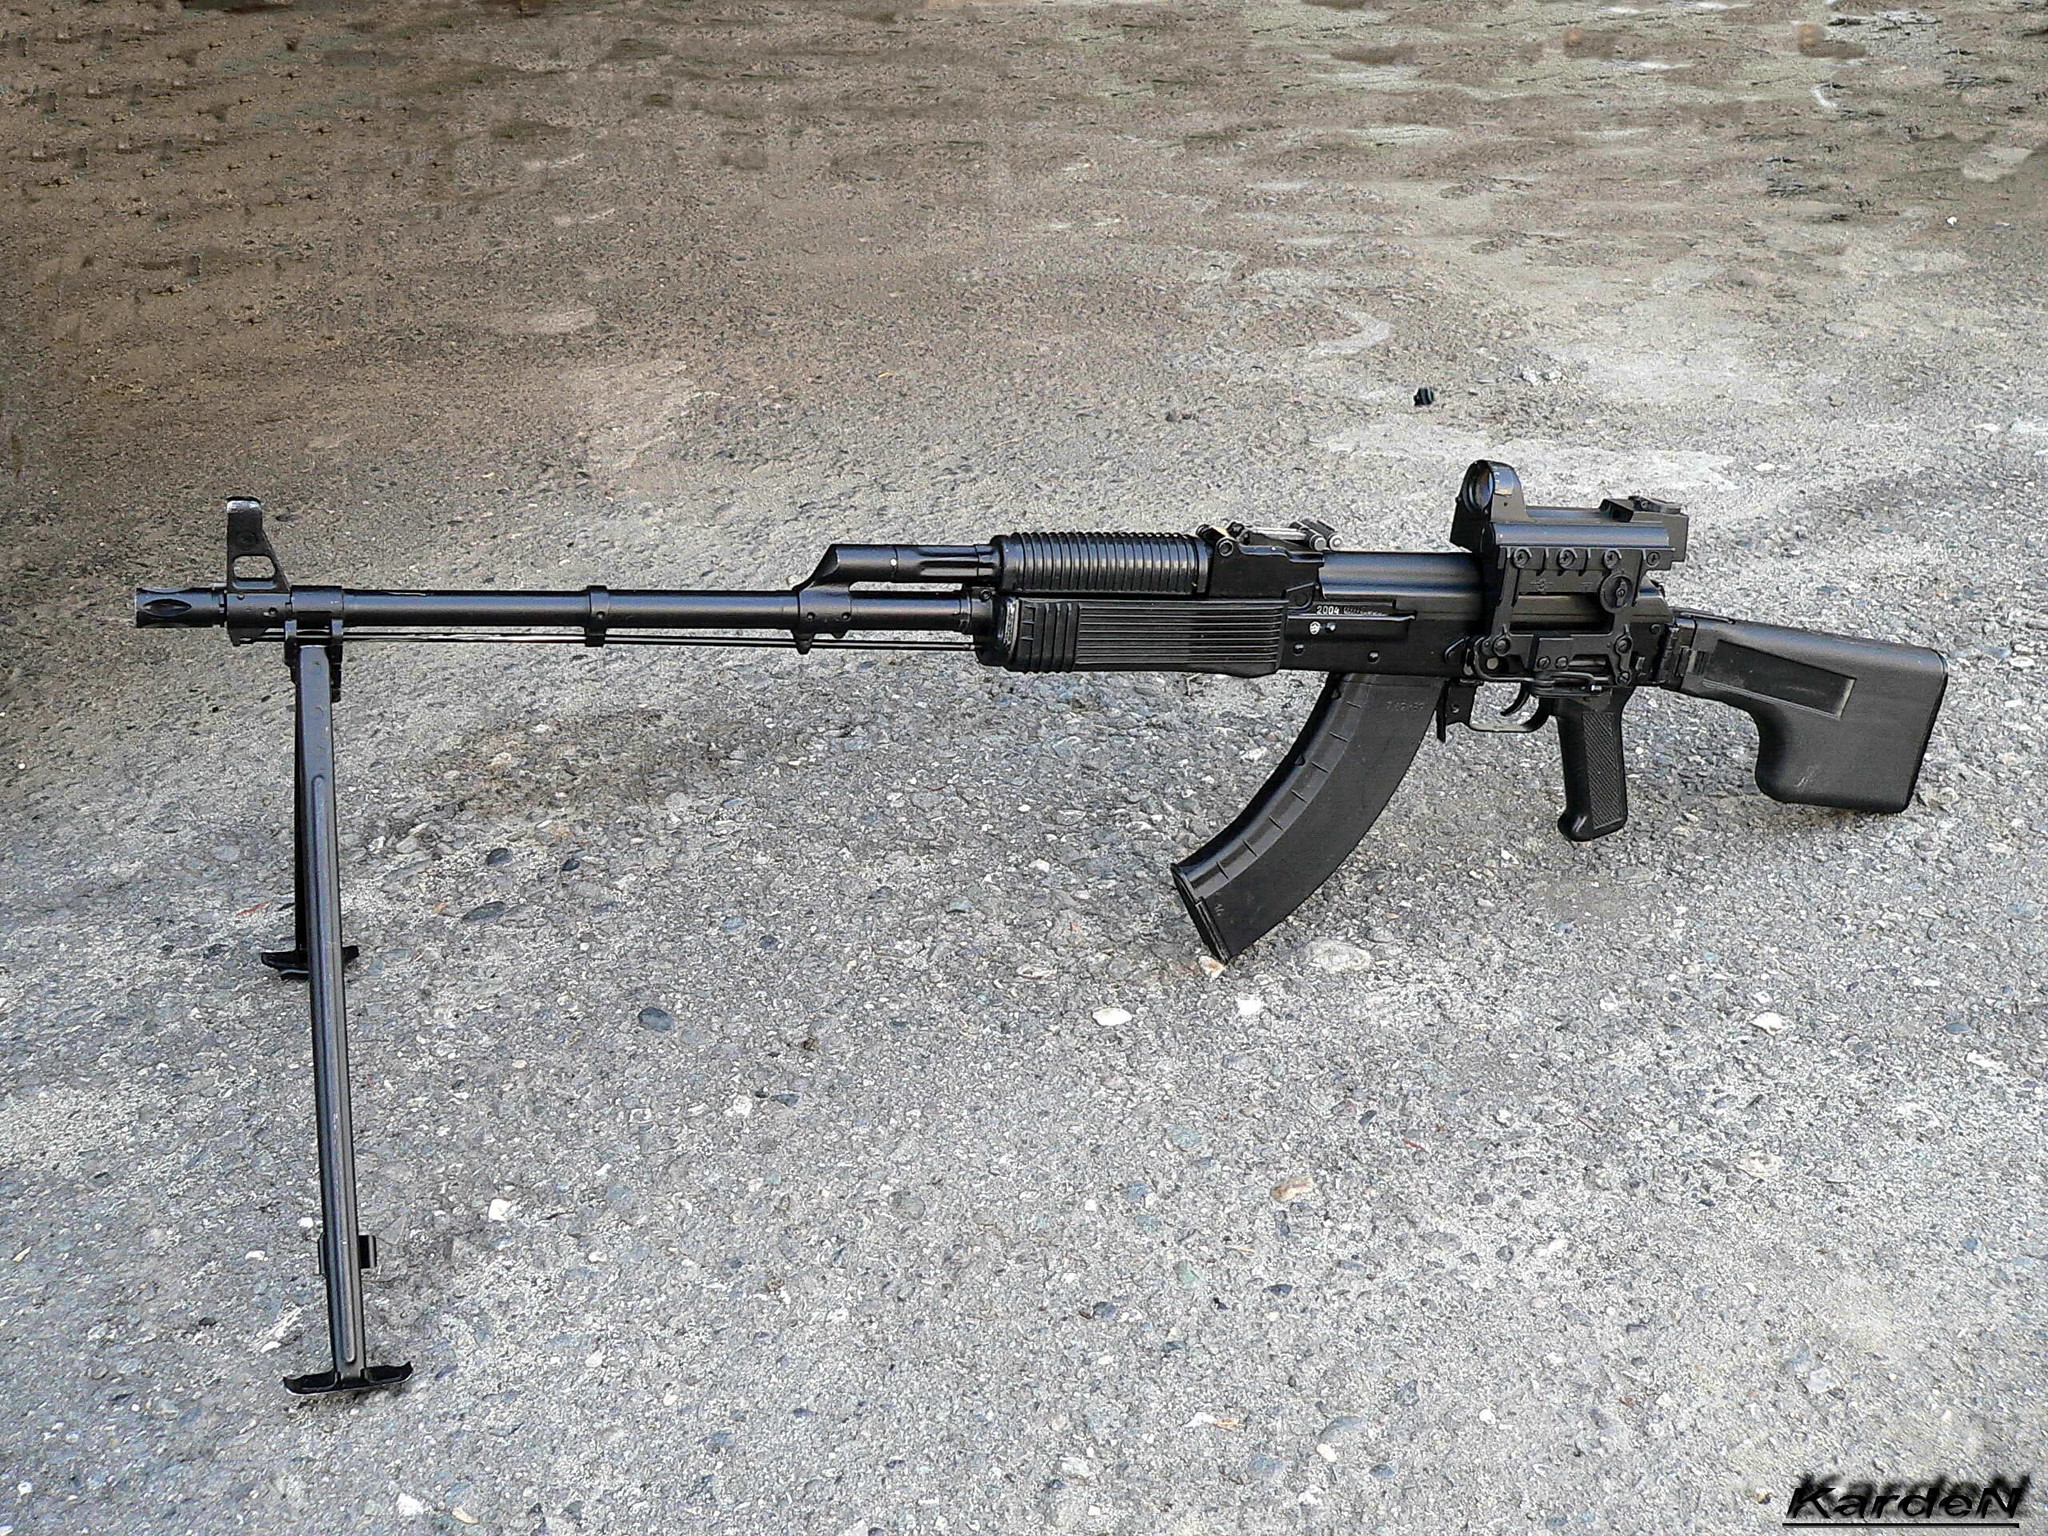 Ручной пулемет Калашникова - РПК-74М, фото 1.